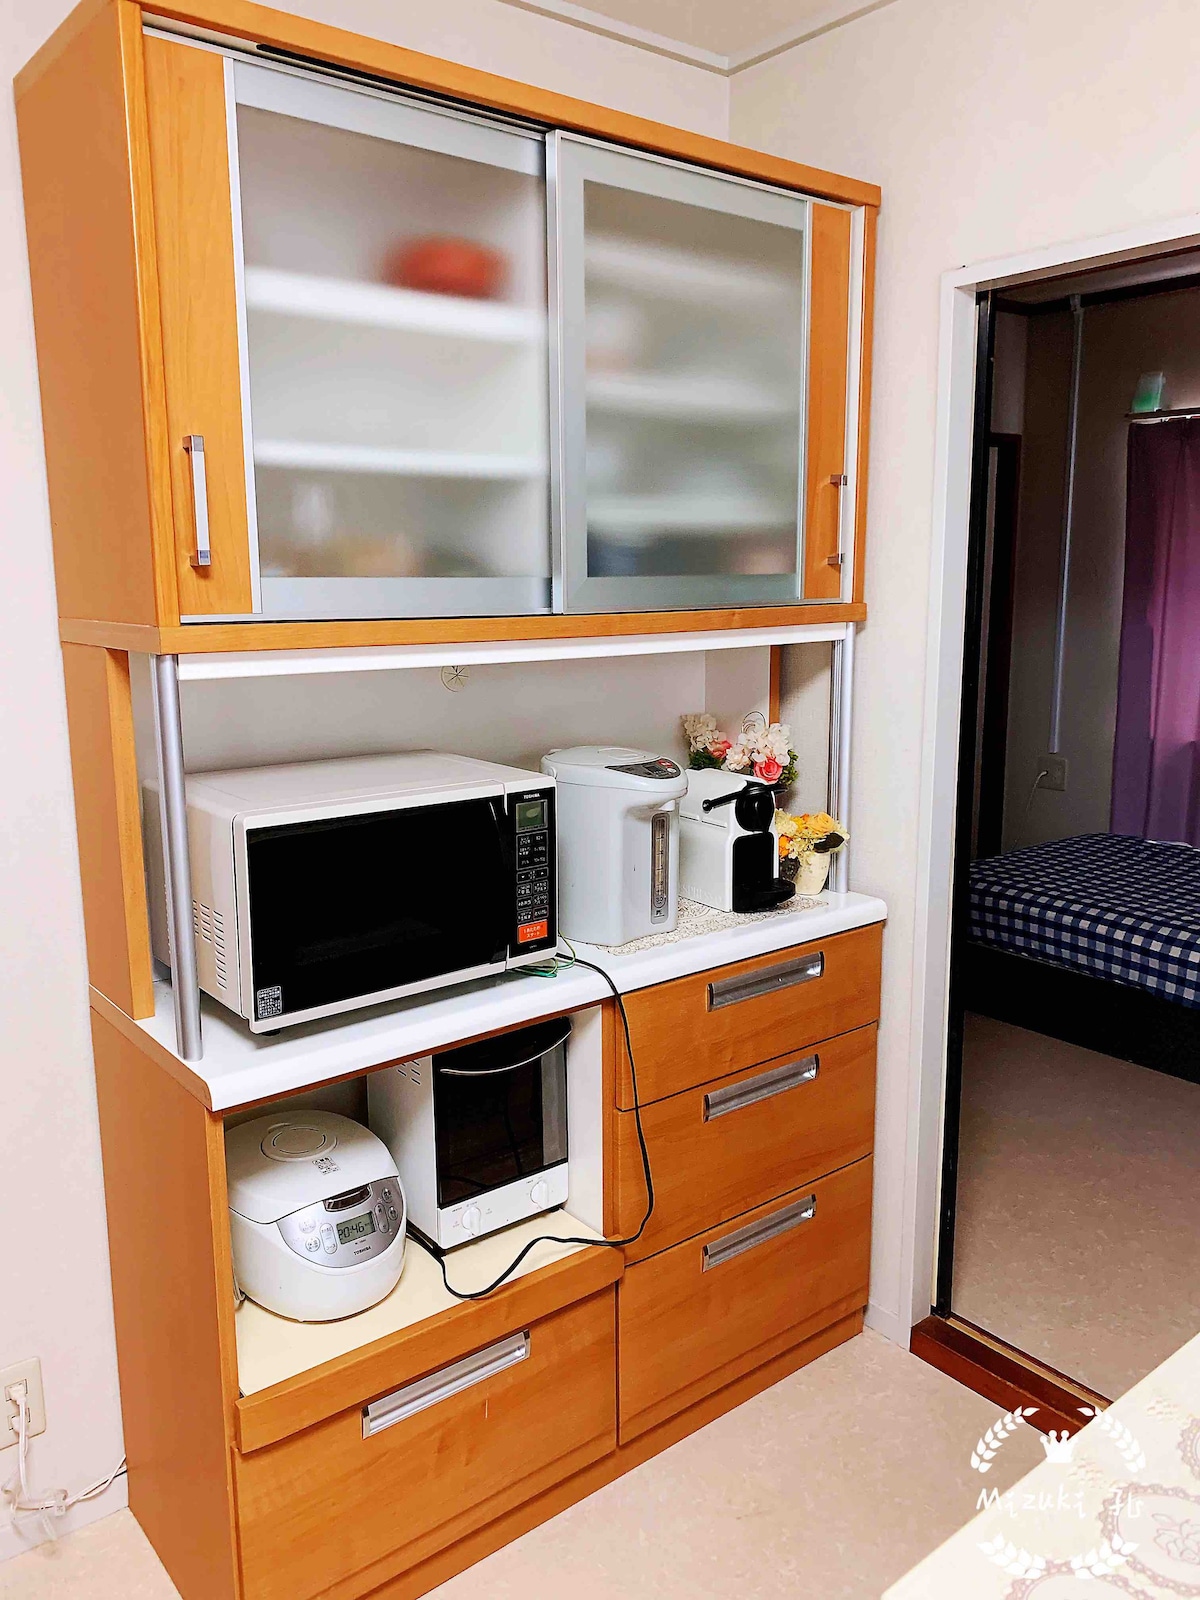 旅人の家
設備完備,家族旅行に最適です。日式民宿，现代式的家庭设备完善。